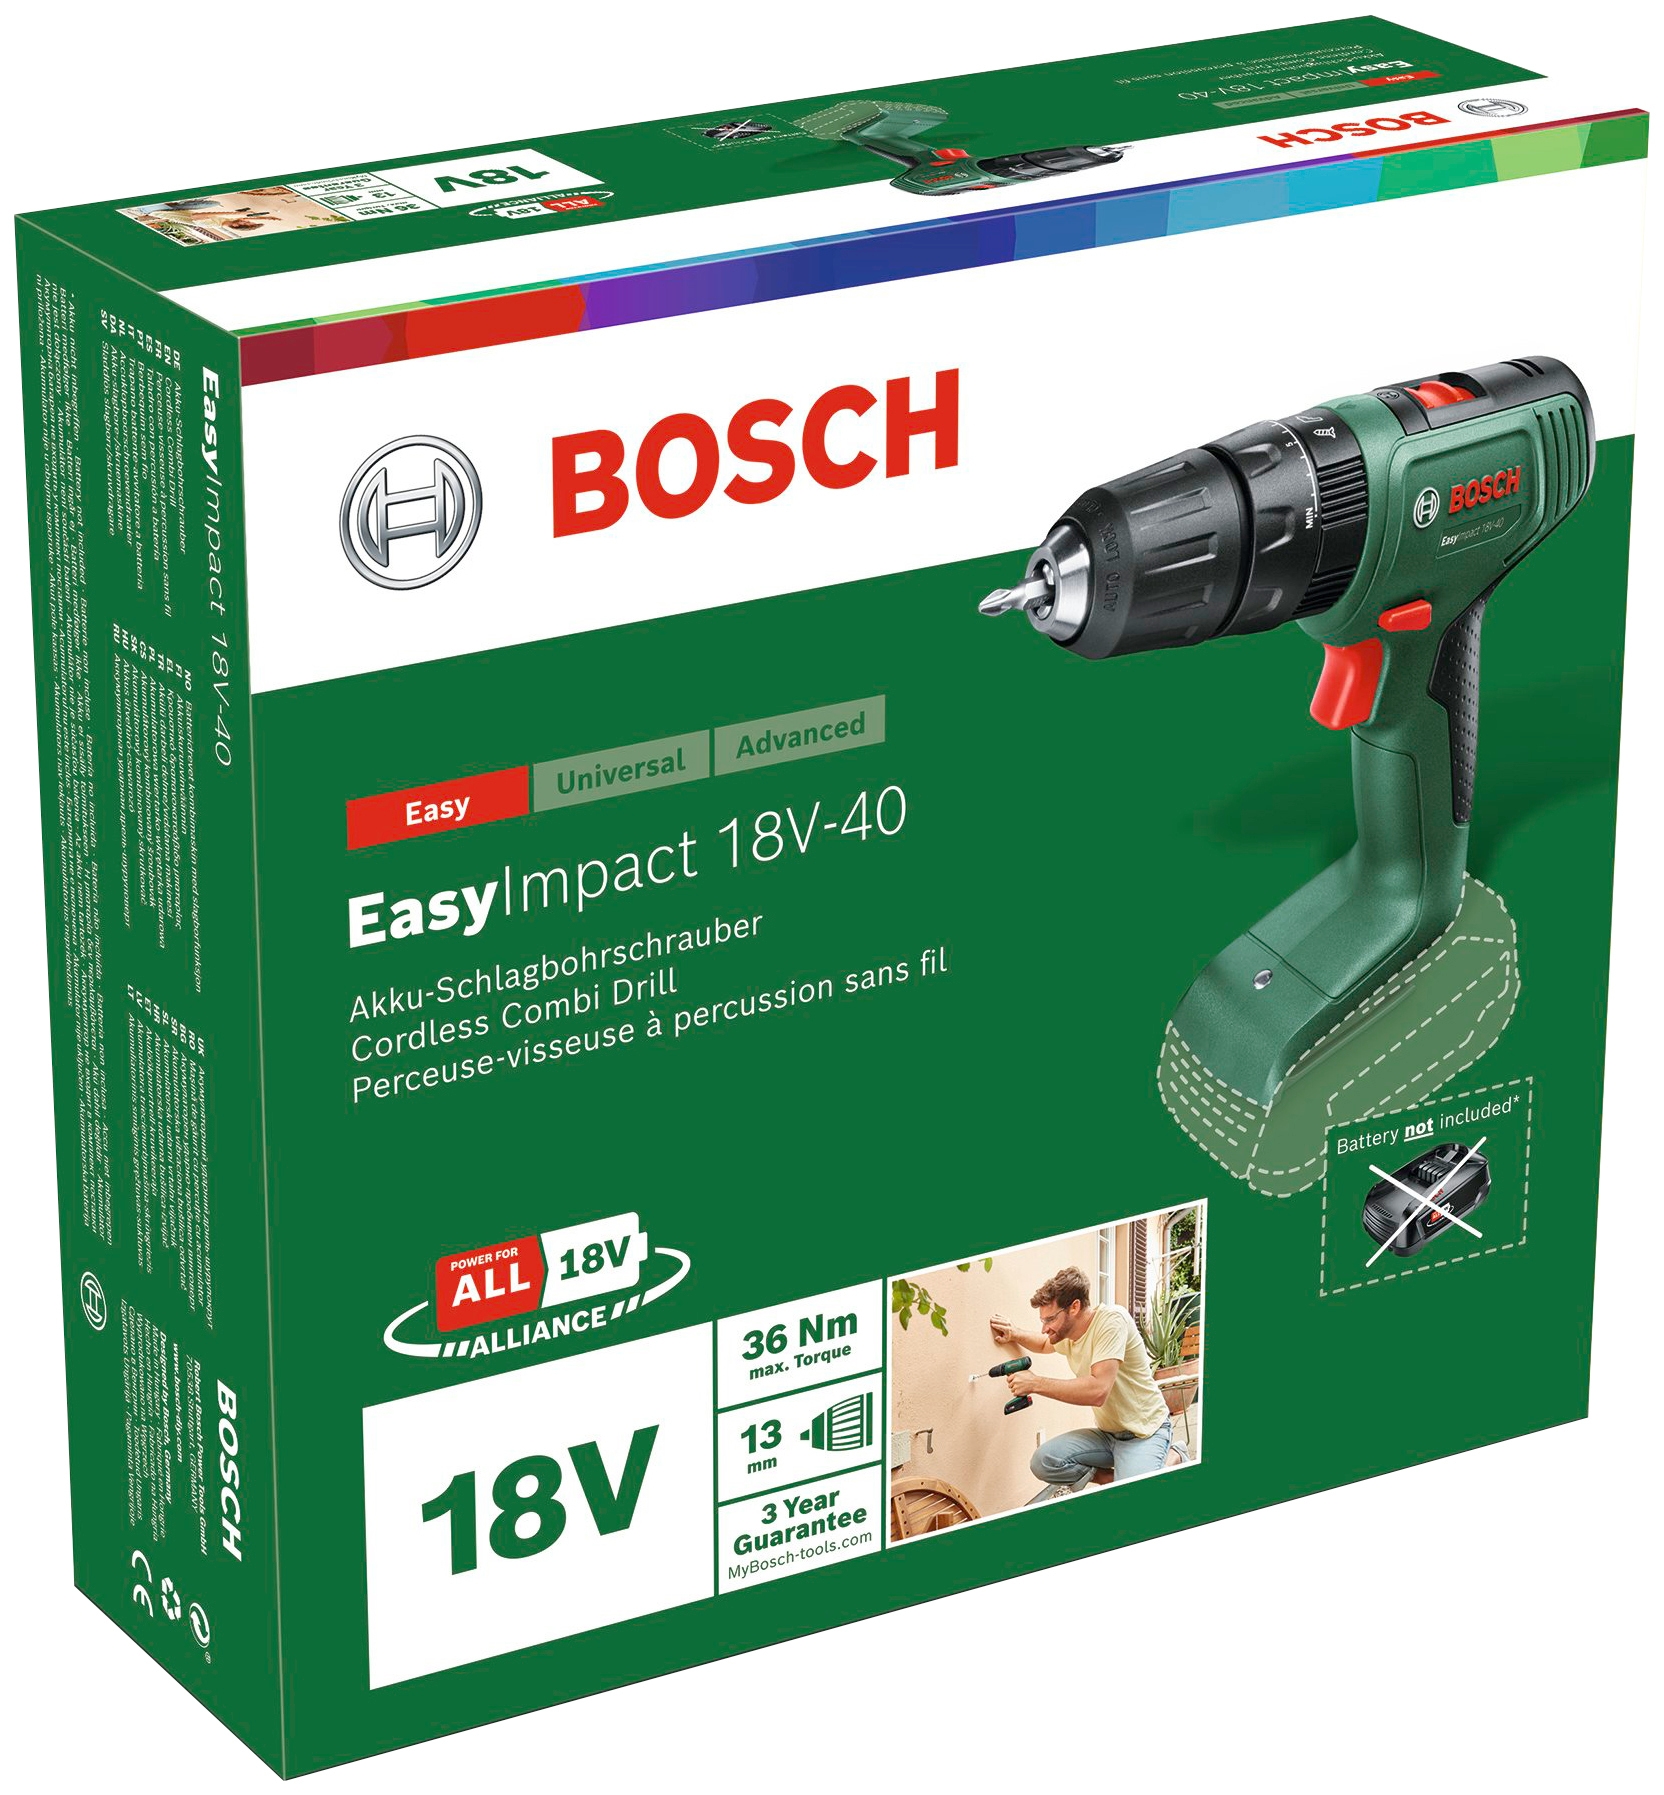 Bosch Home & Garden Akku-Schlagbohrschrauber »EasyImpact 18V-40«, ohne Akku und Ladegerät, 18 Volt System